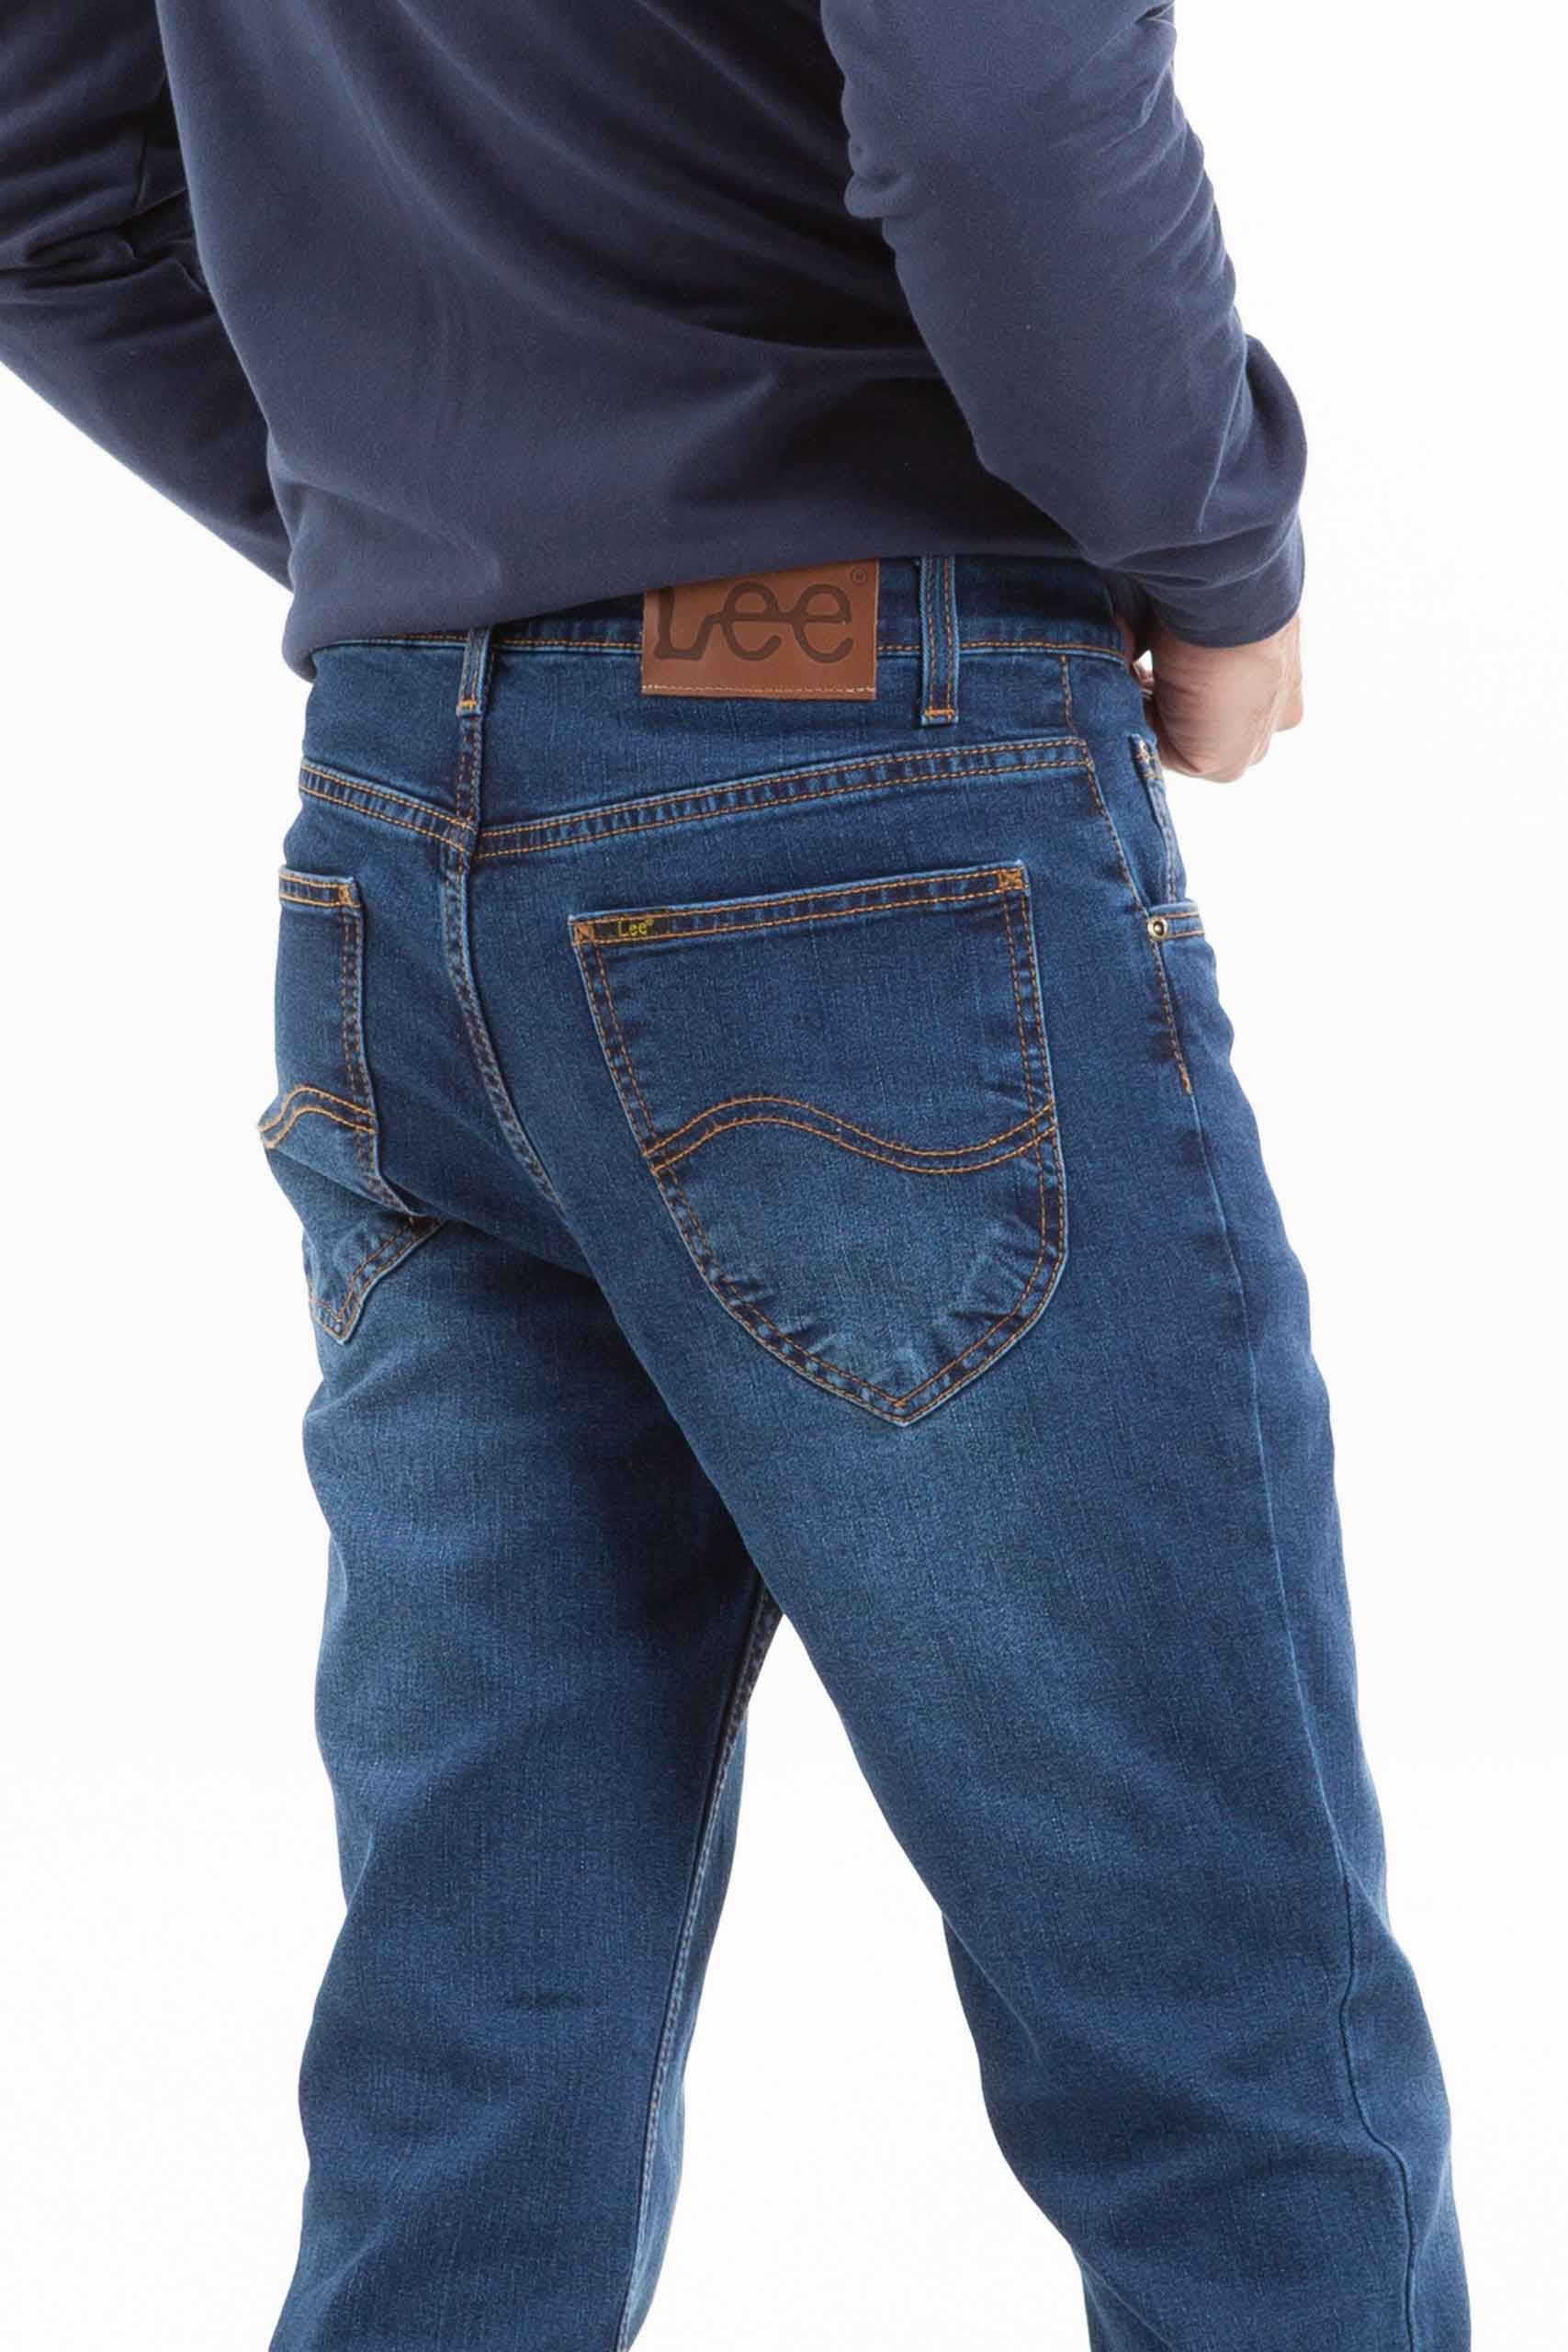 Vista posterior de jean con dos bolsillos color azul marca Lee